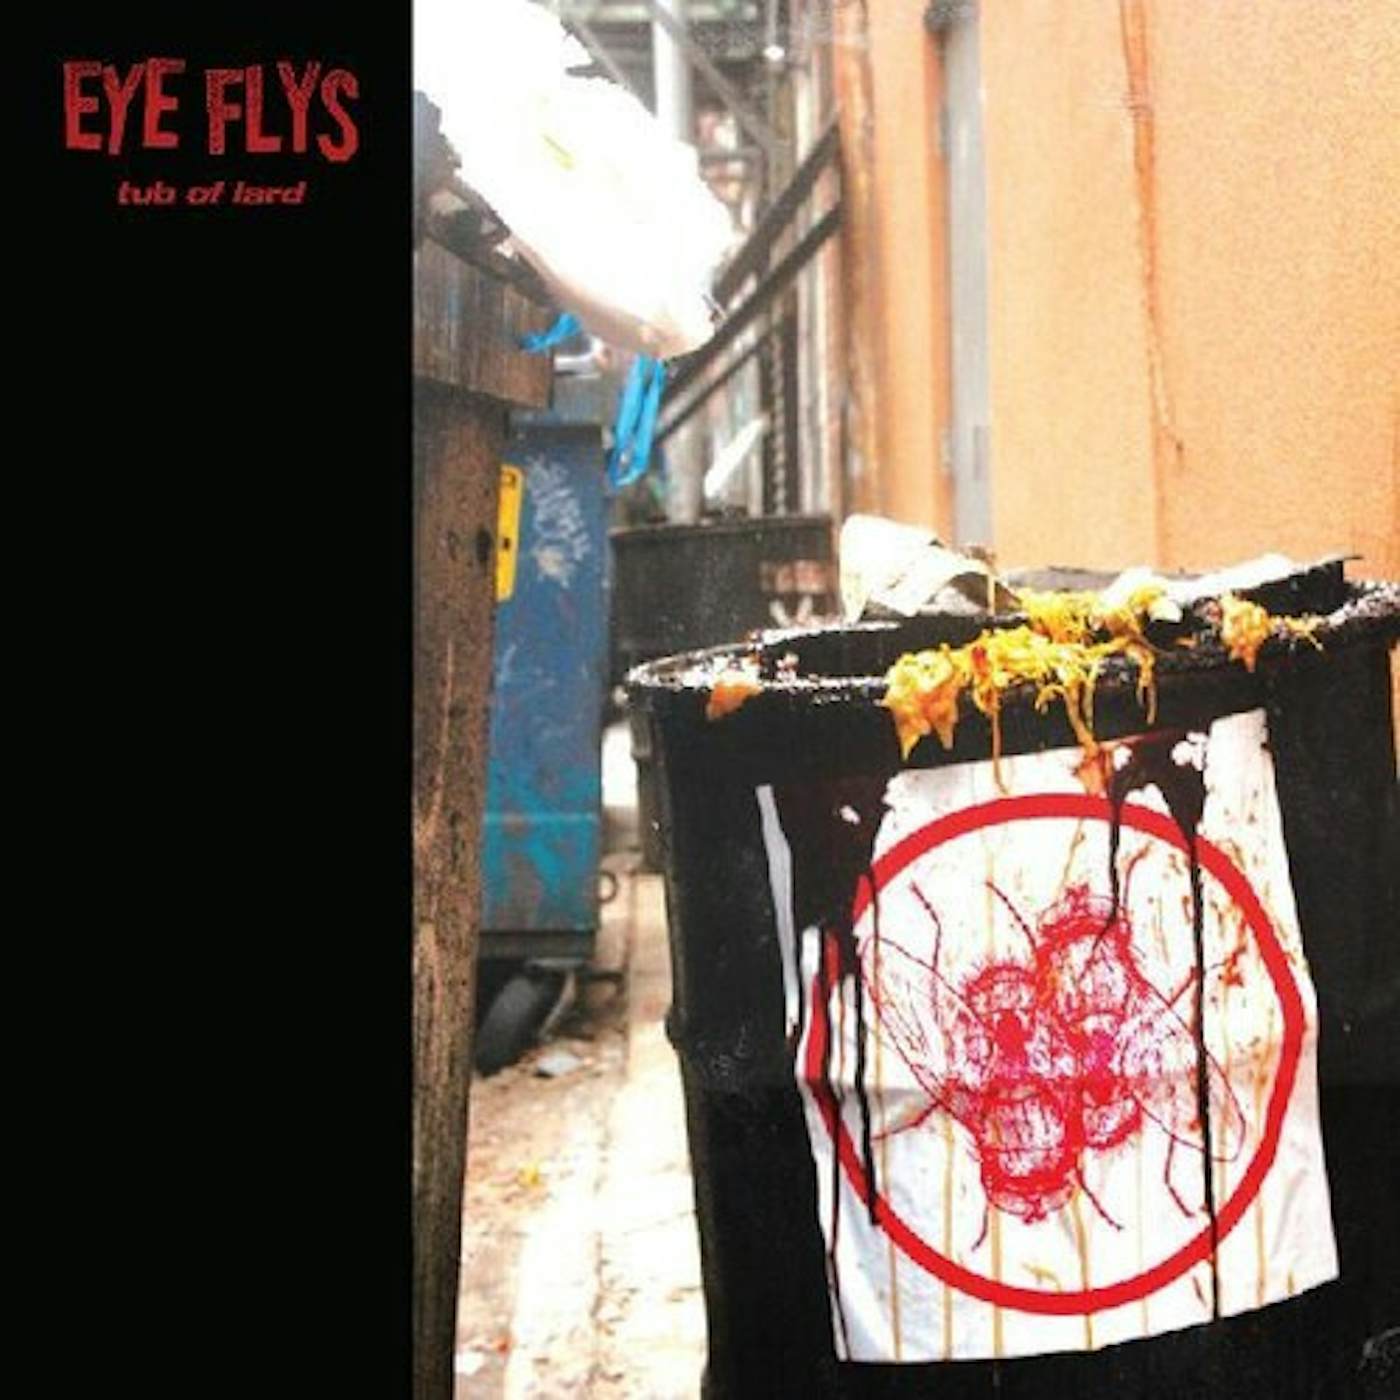 Eye Flys Tub of Lard Vinyl Record